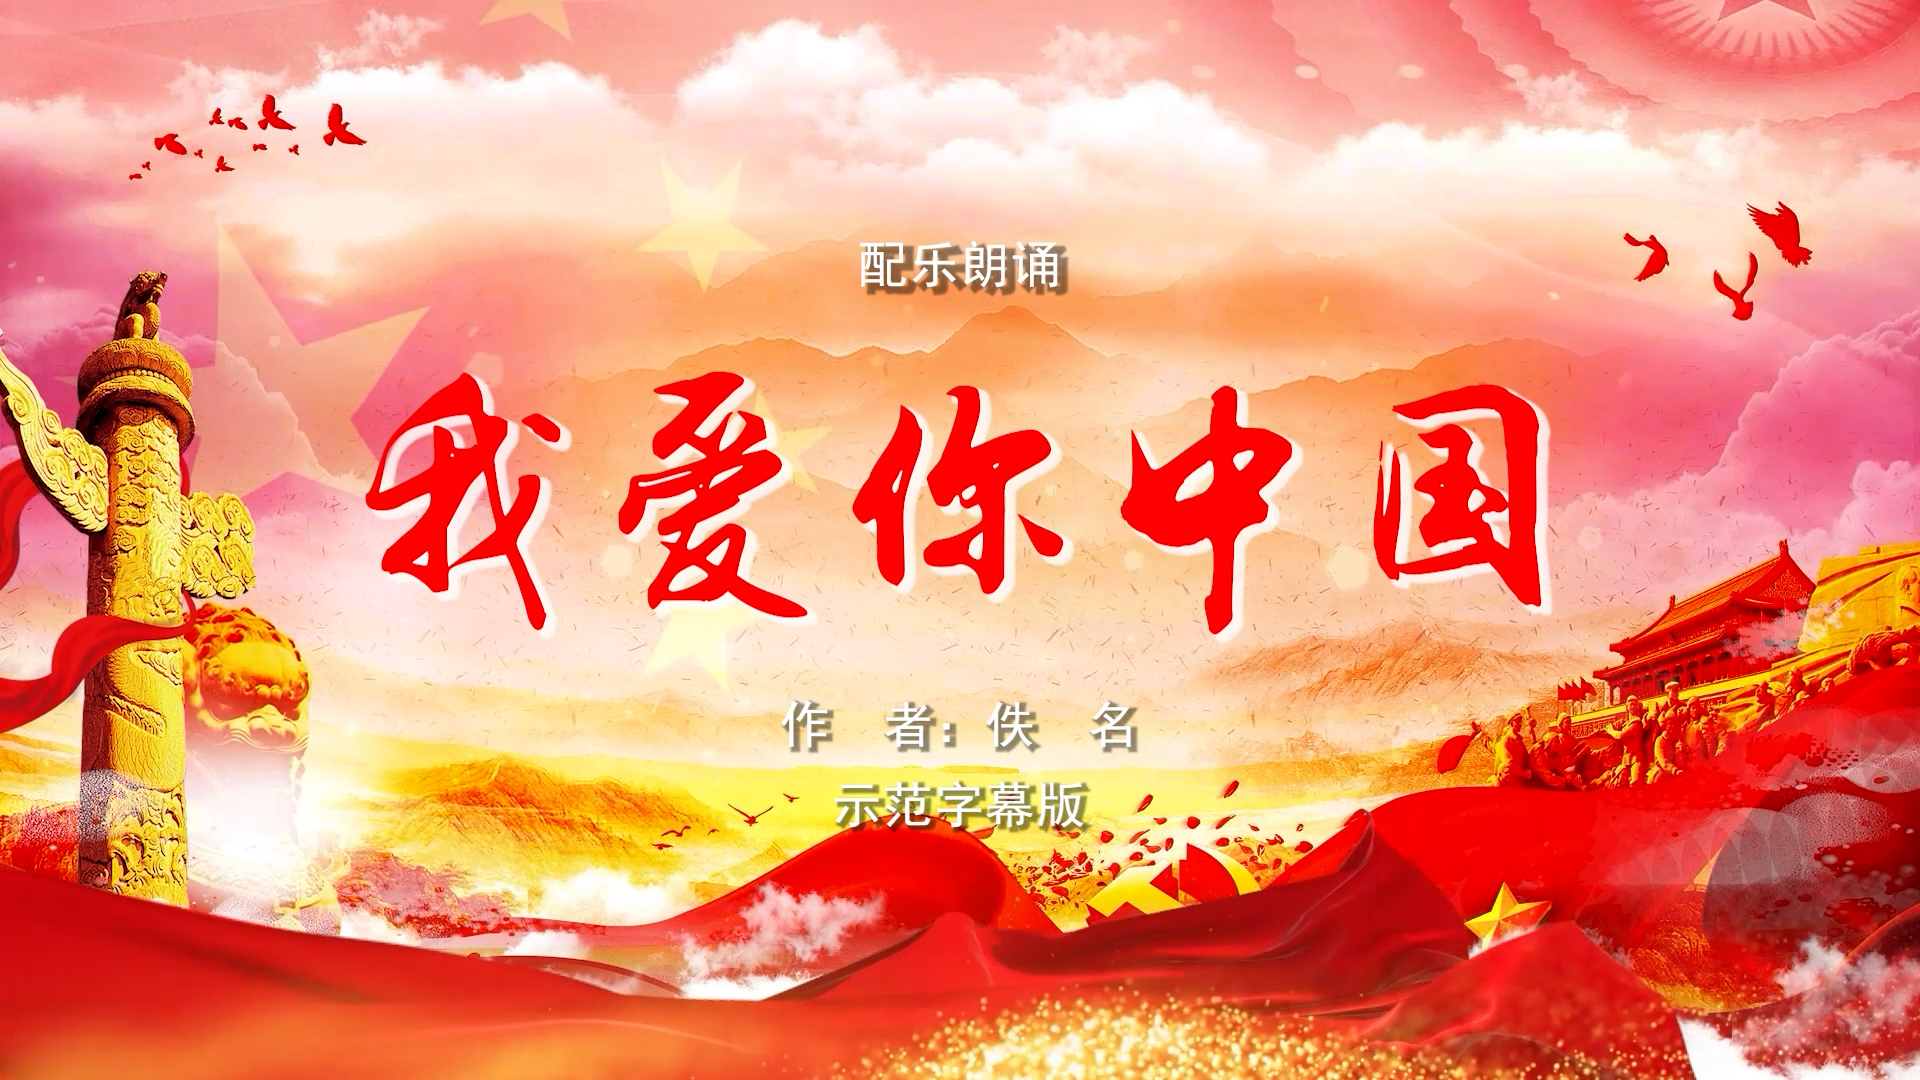 我爱你中国 五四青年节 双人诗歌朗诵配乐伴奏舞台演出LED背景视频素材TV